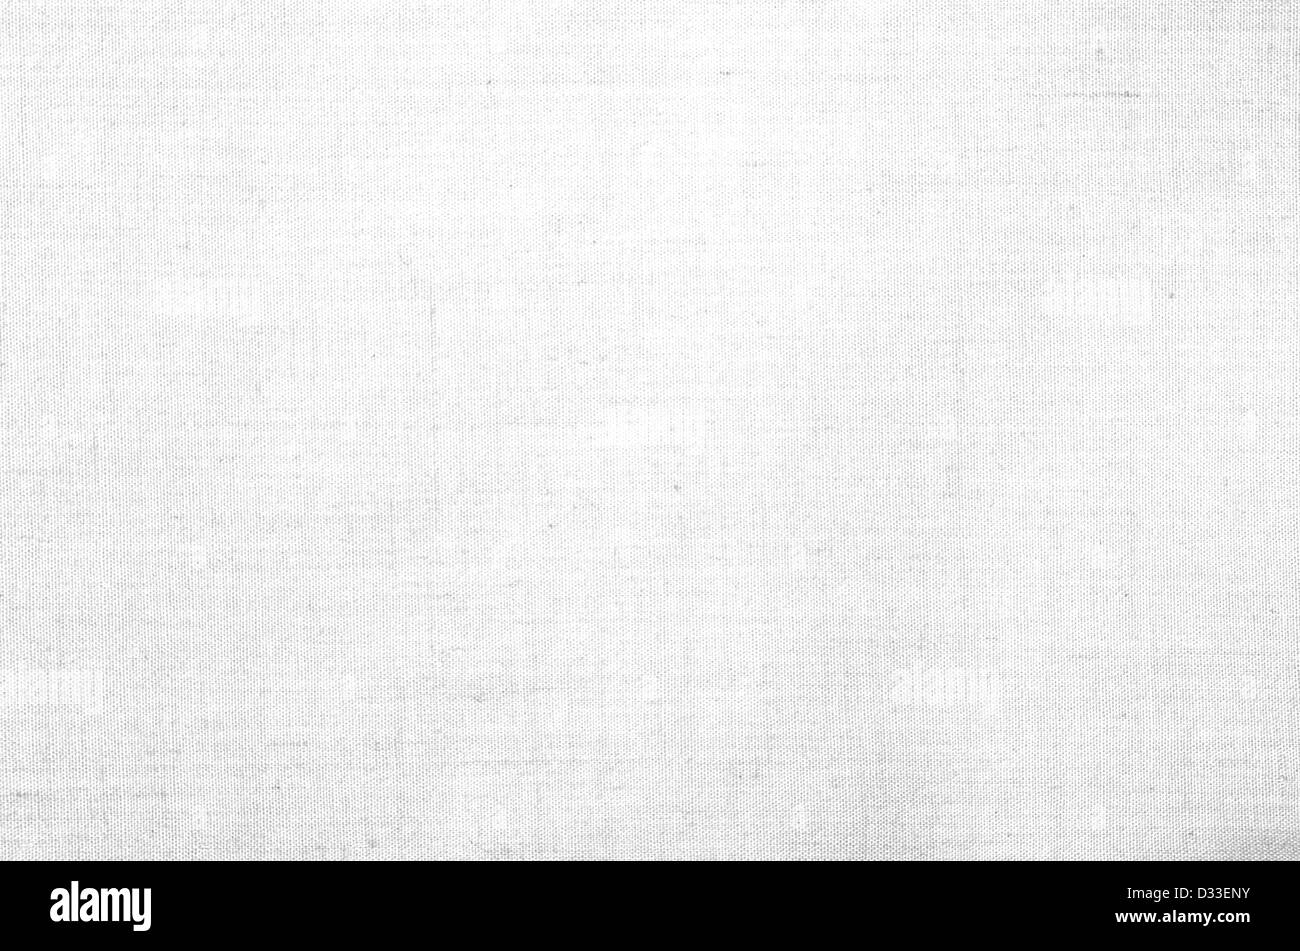 La tela blanca de fondo o textura Fotografía de stock - Alamy